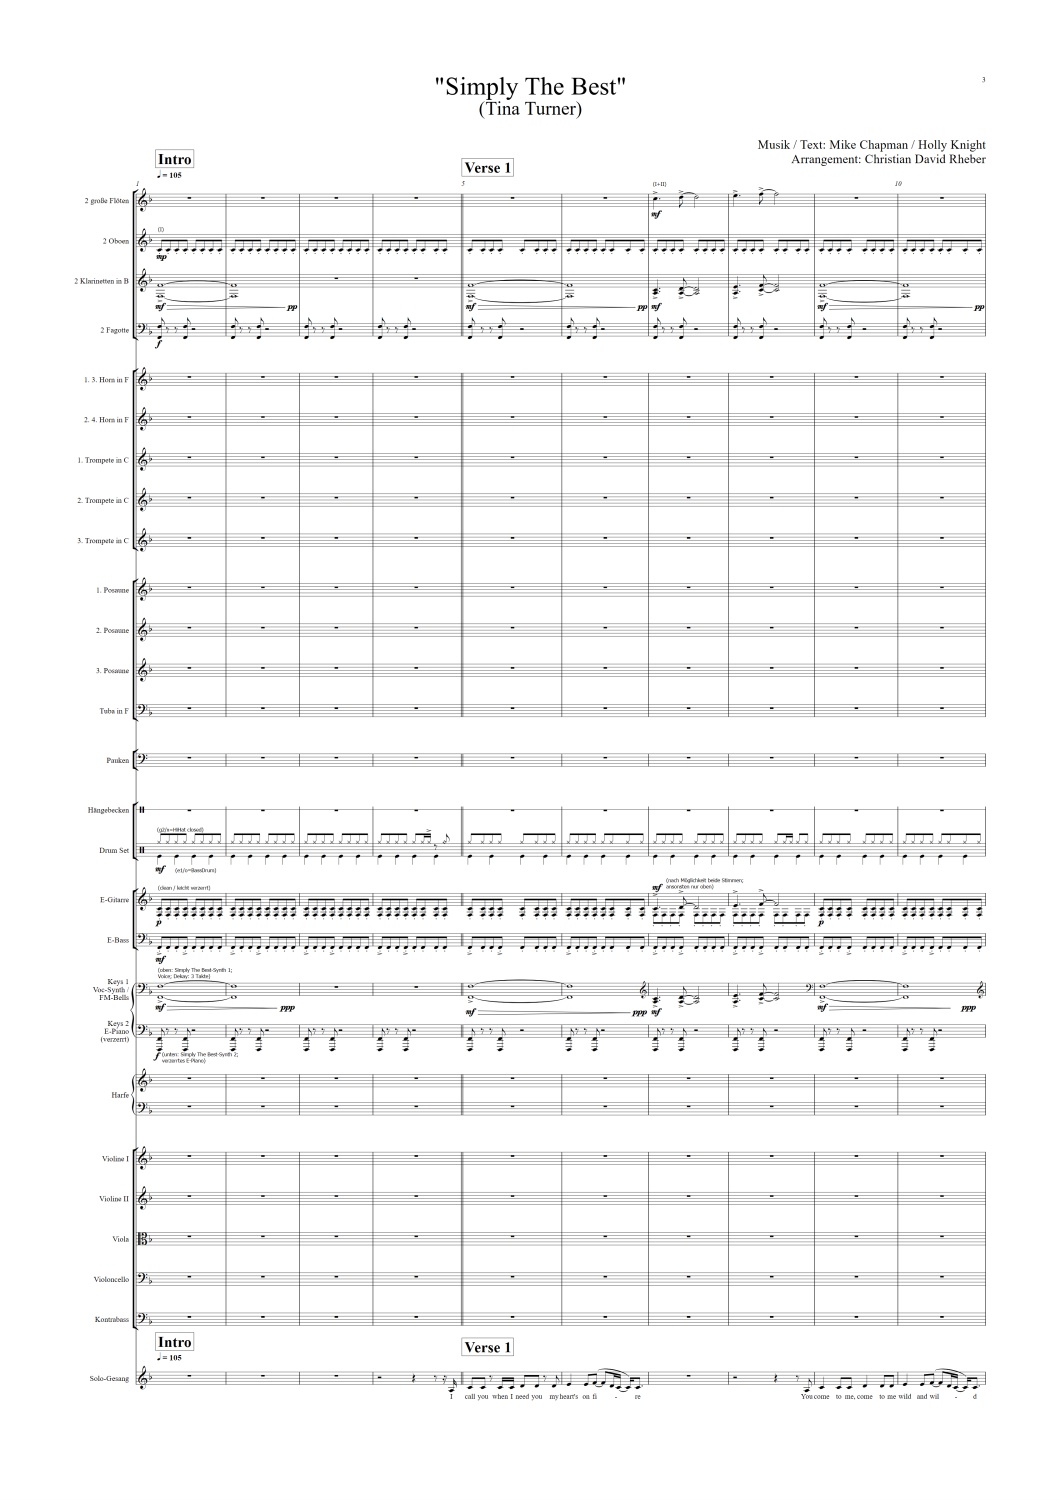 Orchester-Arrangement Simply The Best (Tina Turner), Noten für Orchester, Orchester-Partitur, für Orchester arrangiert, Orchester Partitur